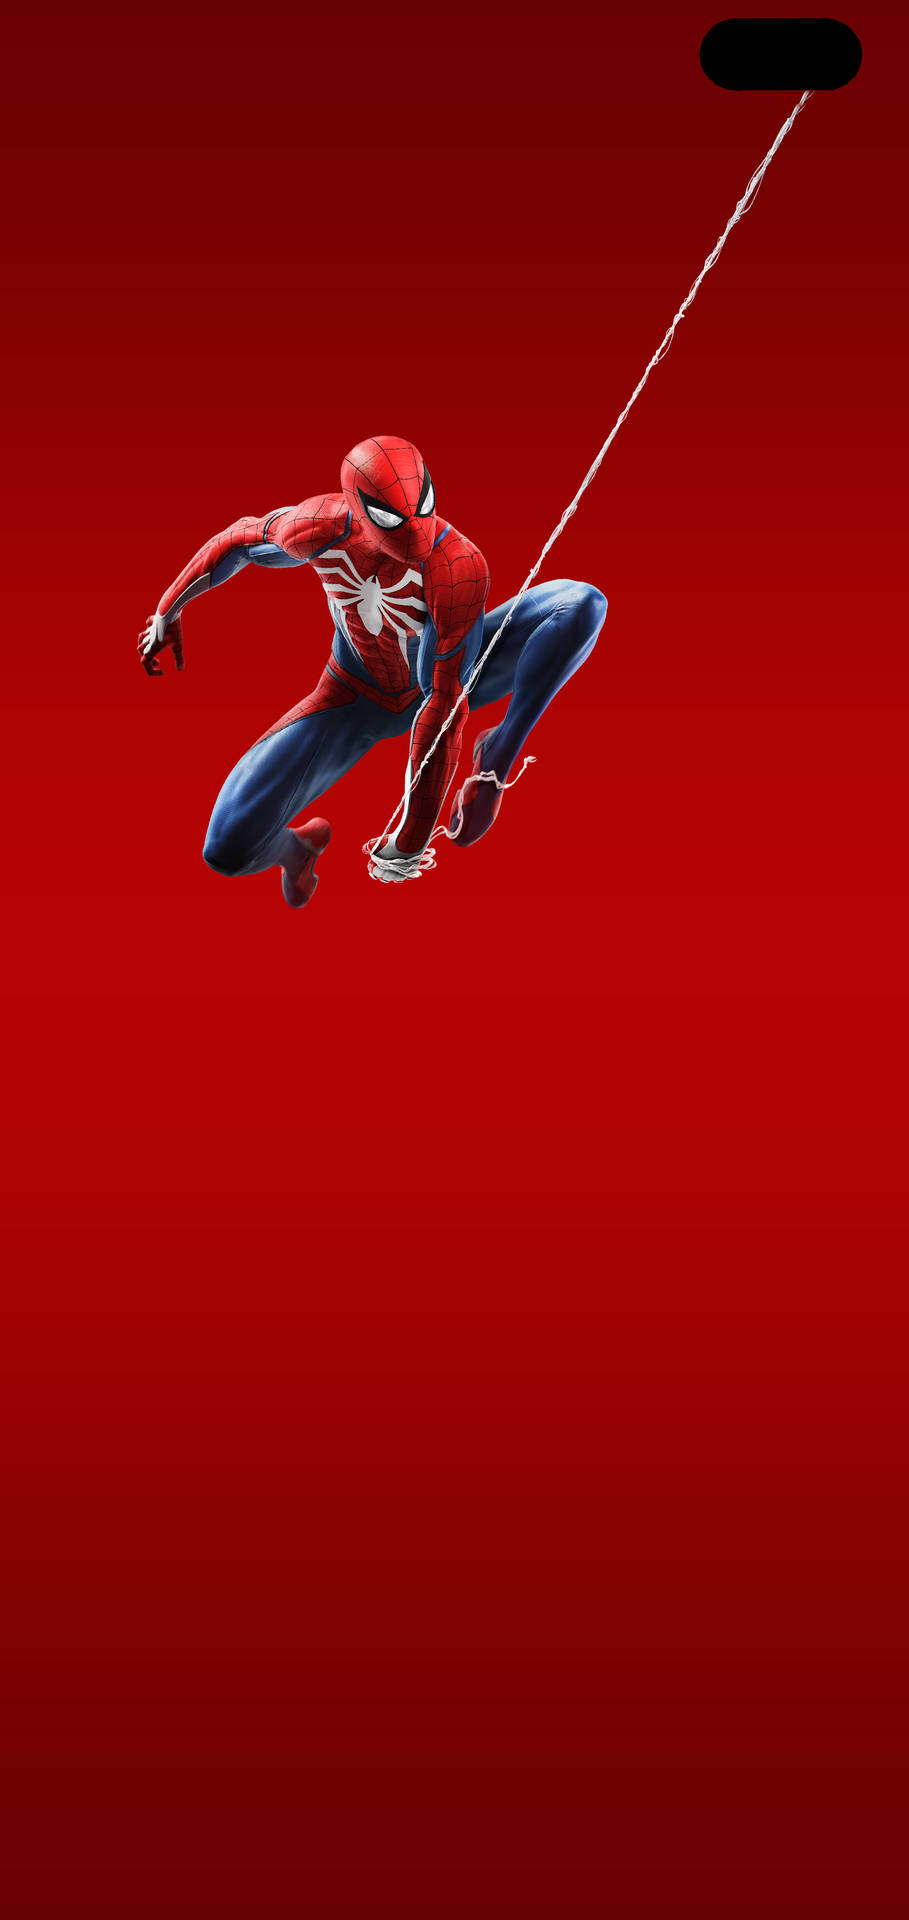 Minimalist Galaxy S10 Plus Spider-man Wallpaper